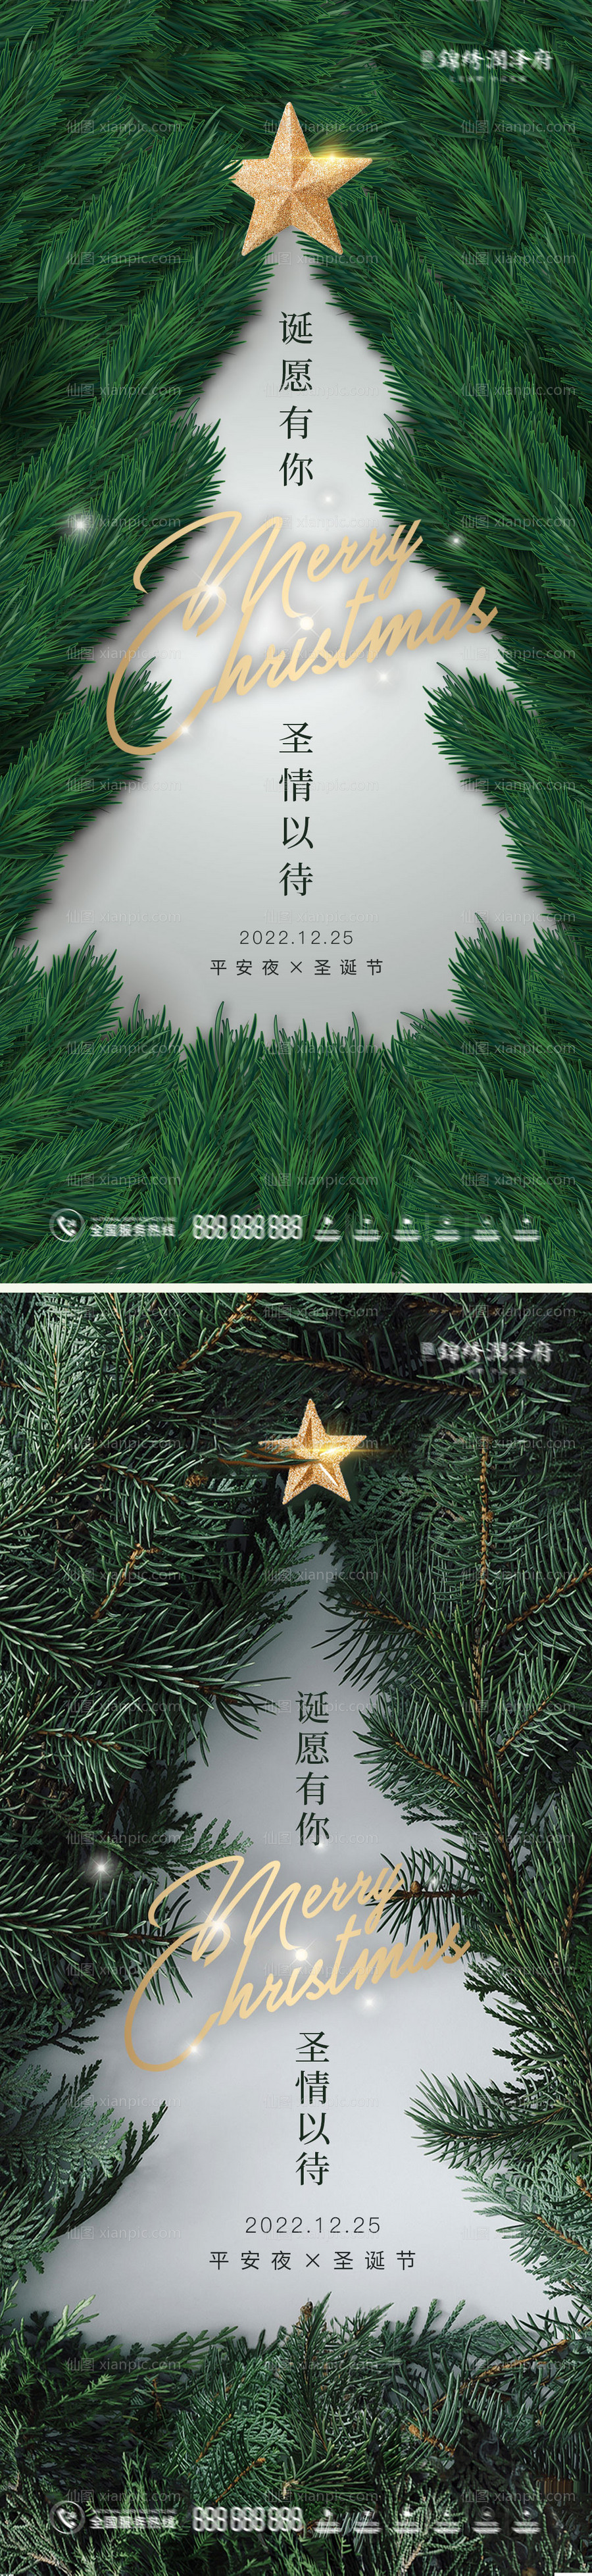 素材乐-圣诞节平安夜创意海报